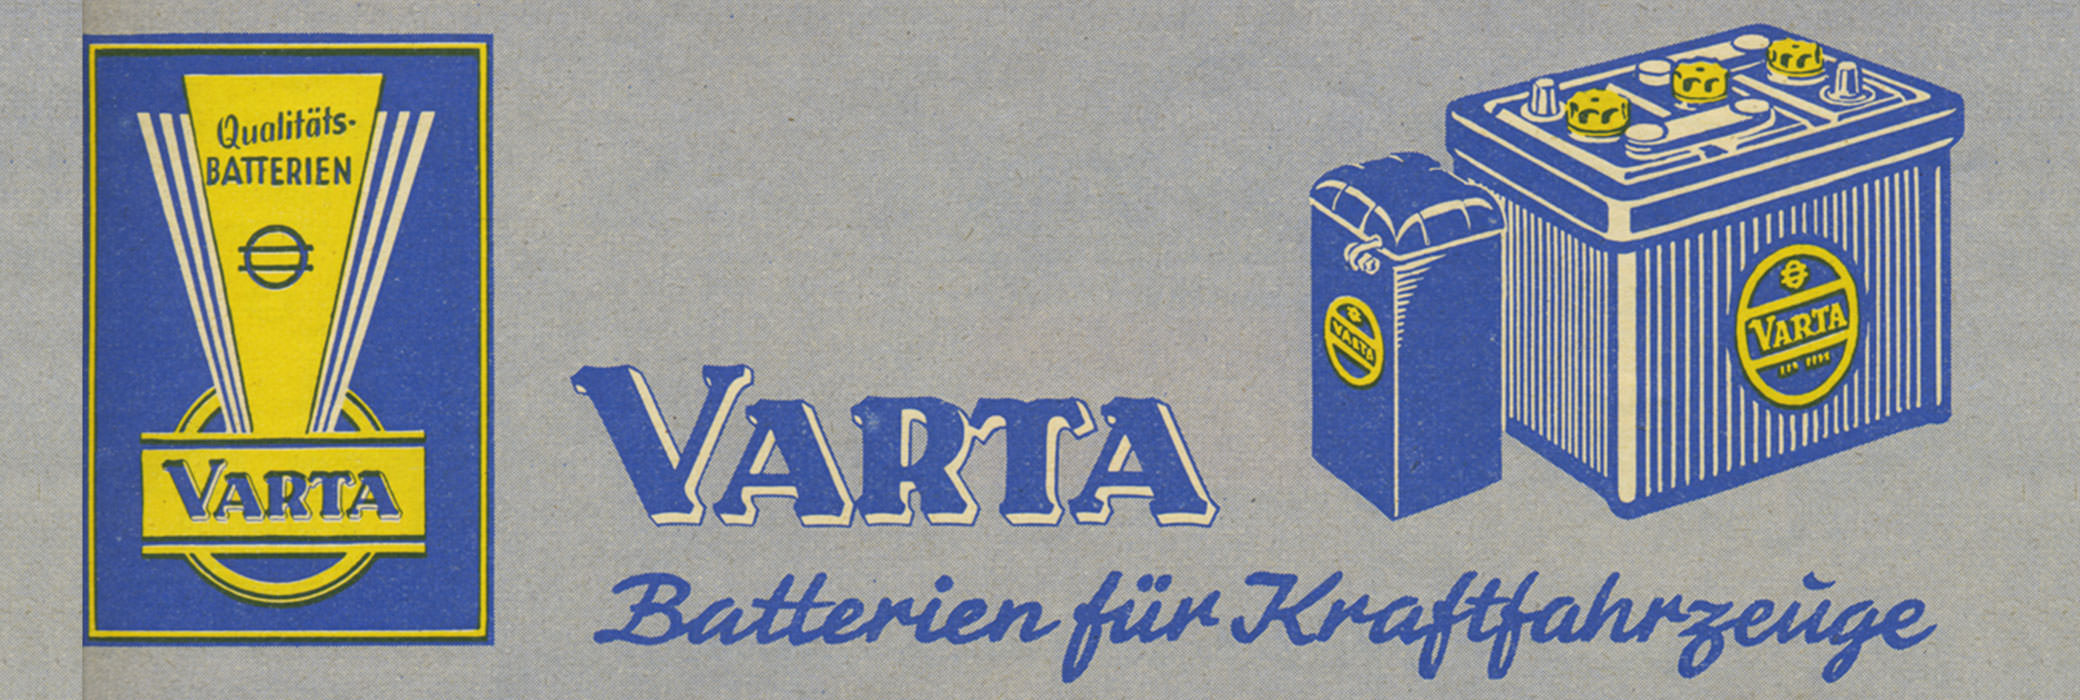 Старая реклама VARTA® в синем и желтом цвете